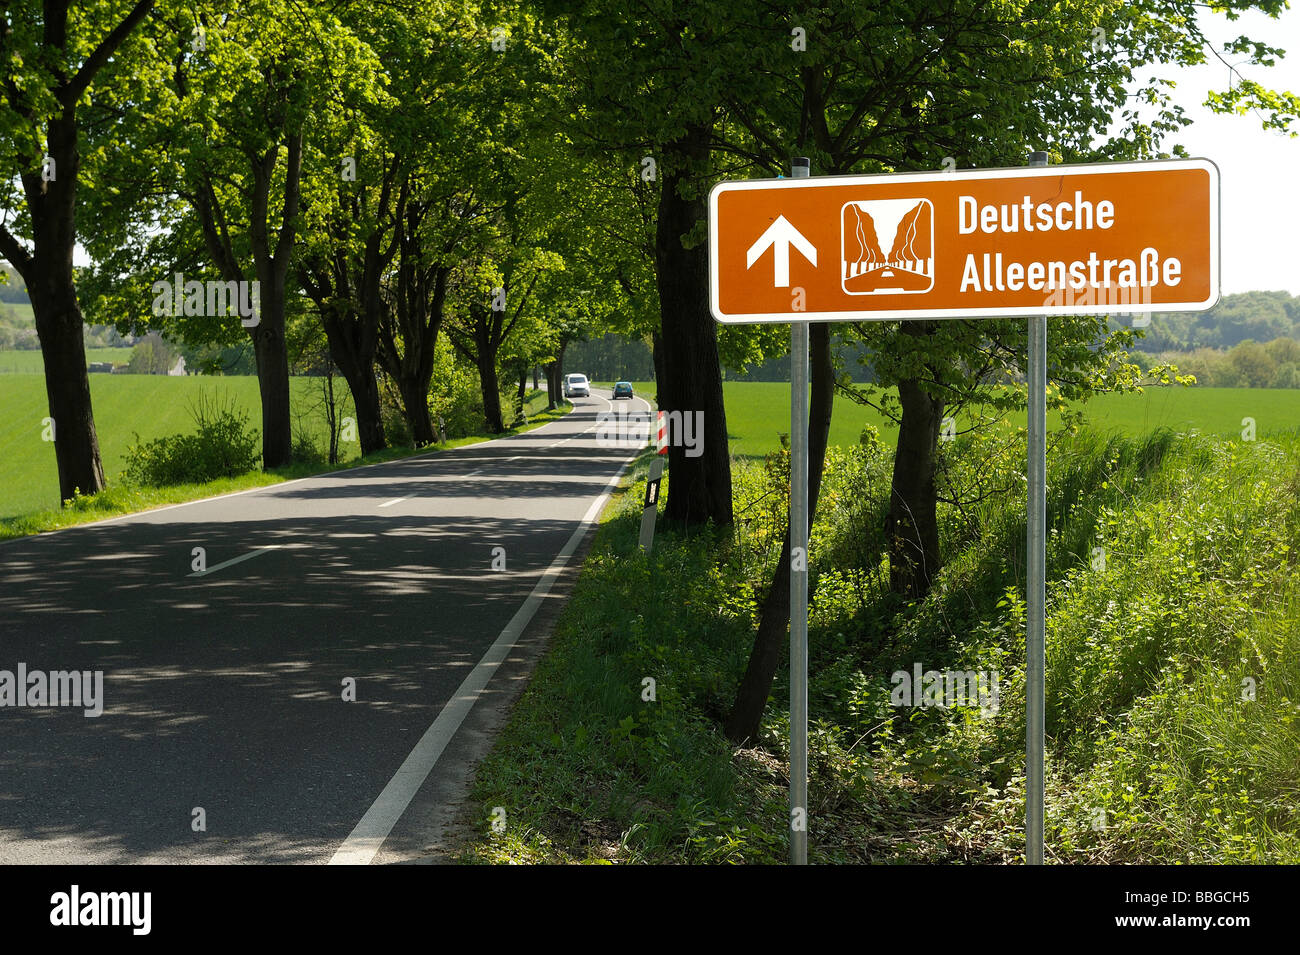 Sign 'Deutsche Alleenstrasse', Rheinisch Bergischer Kreis district, North Rhine-Westphalia, Germany, Europe Stock Photo